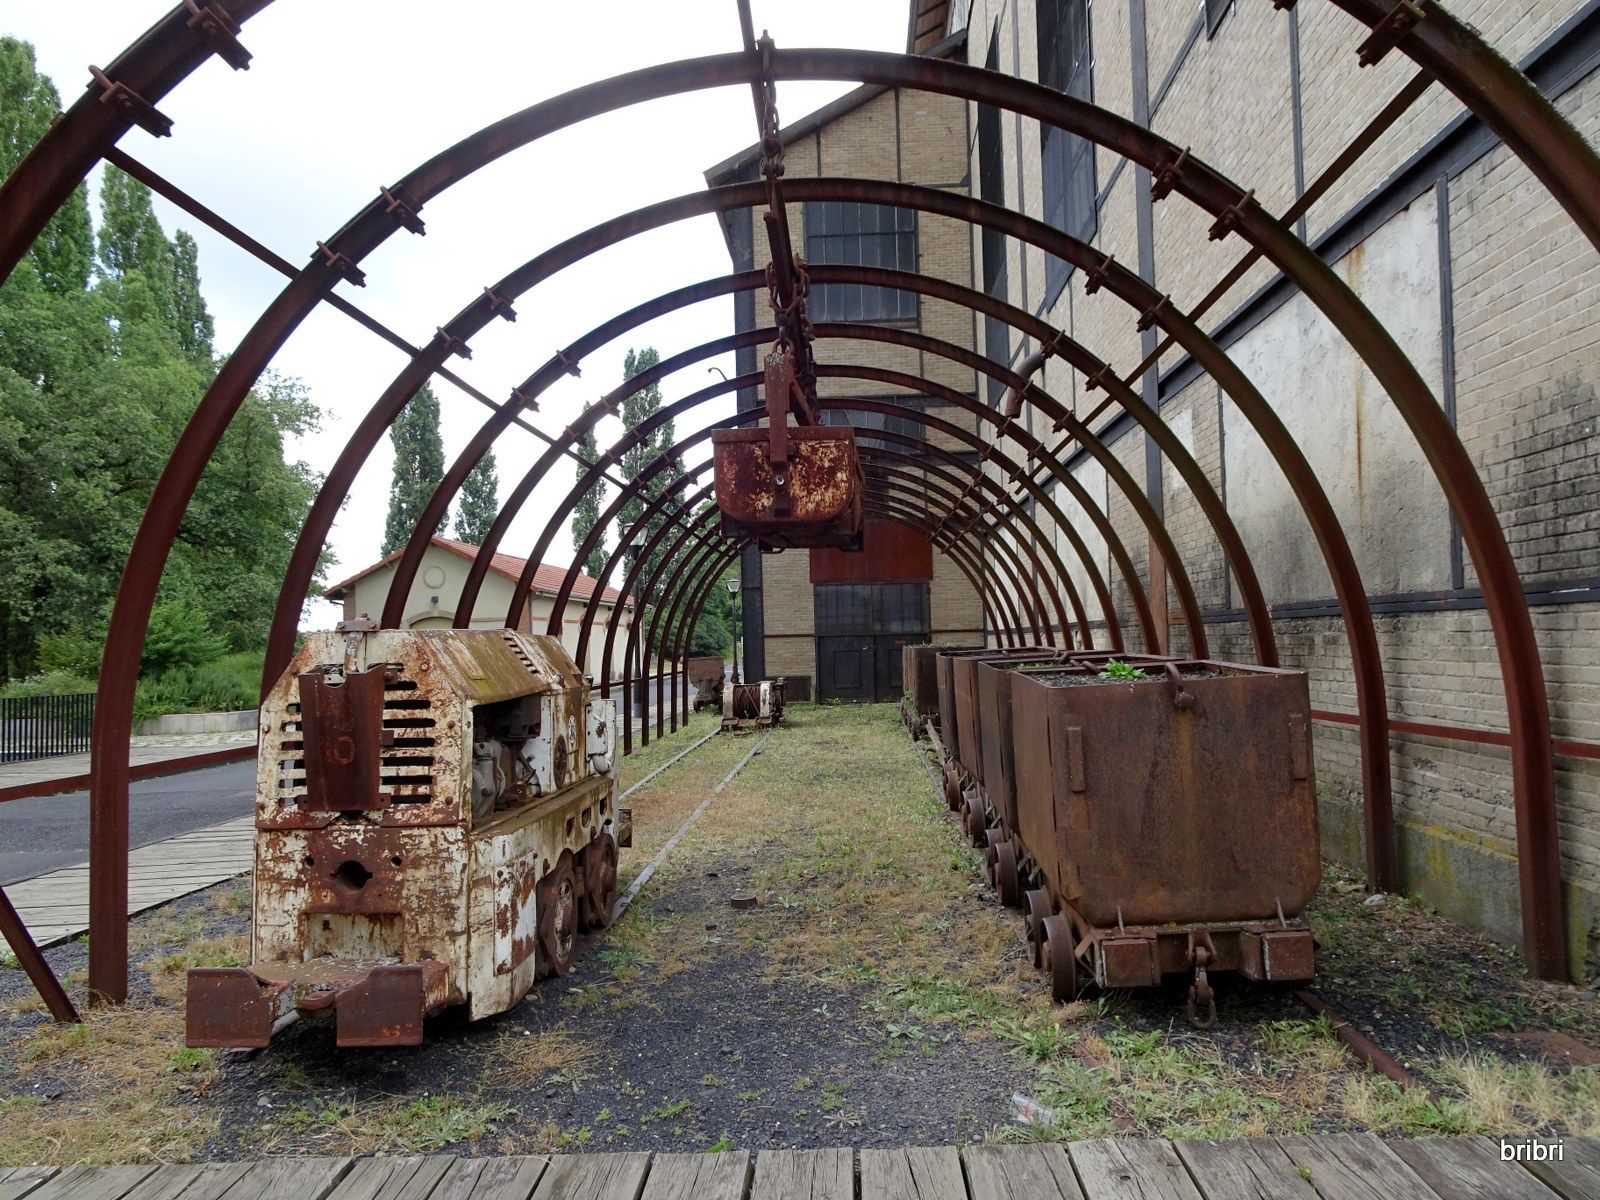 Photos intérieur, extérieur. Mine ouverte en 1924 et fermée en 1978. Nous sommes à la limite Puy-de-Dôme/Hte-Loire.